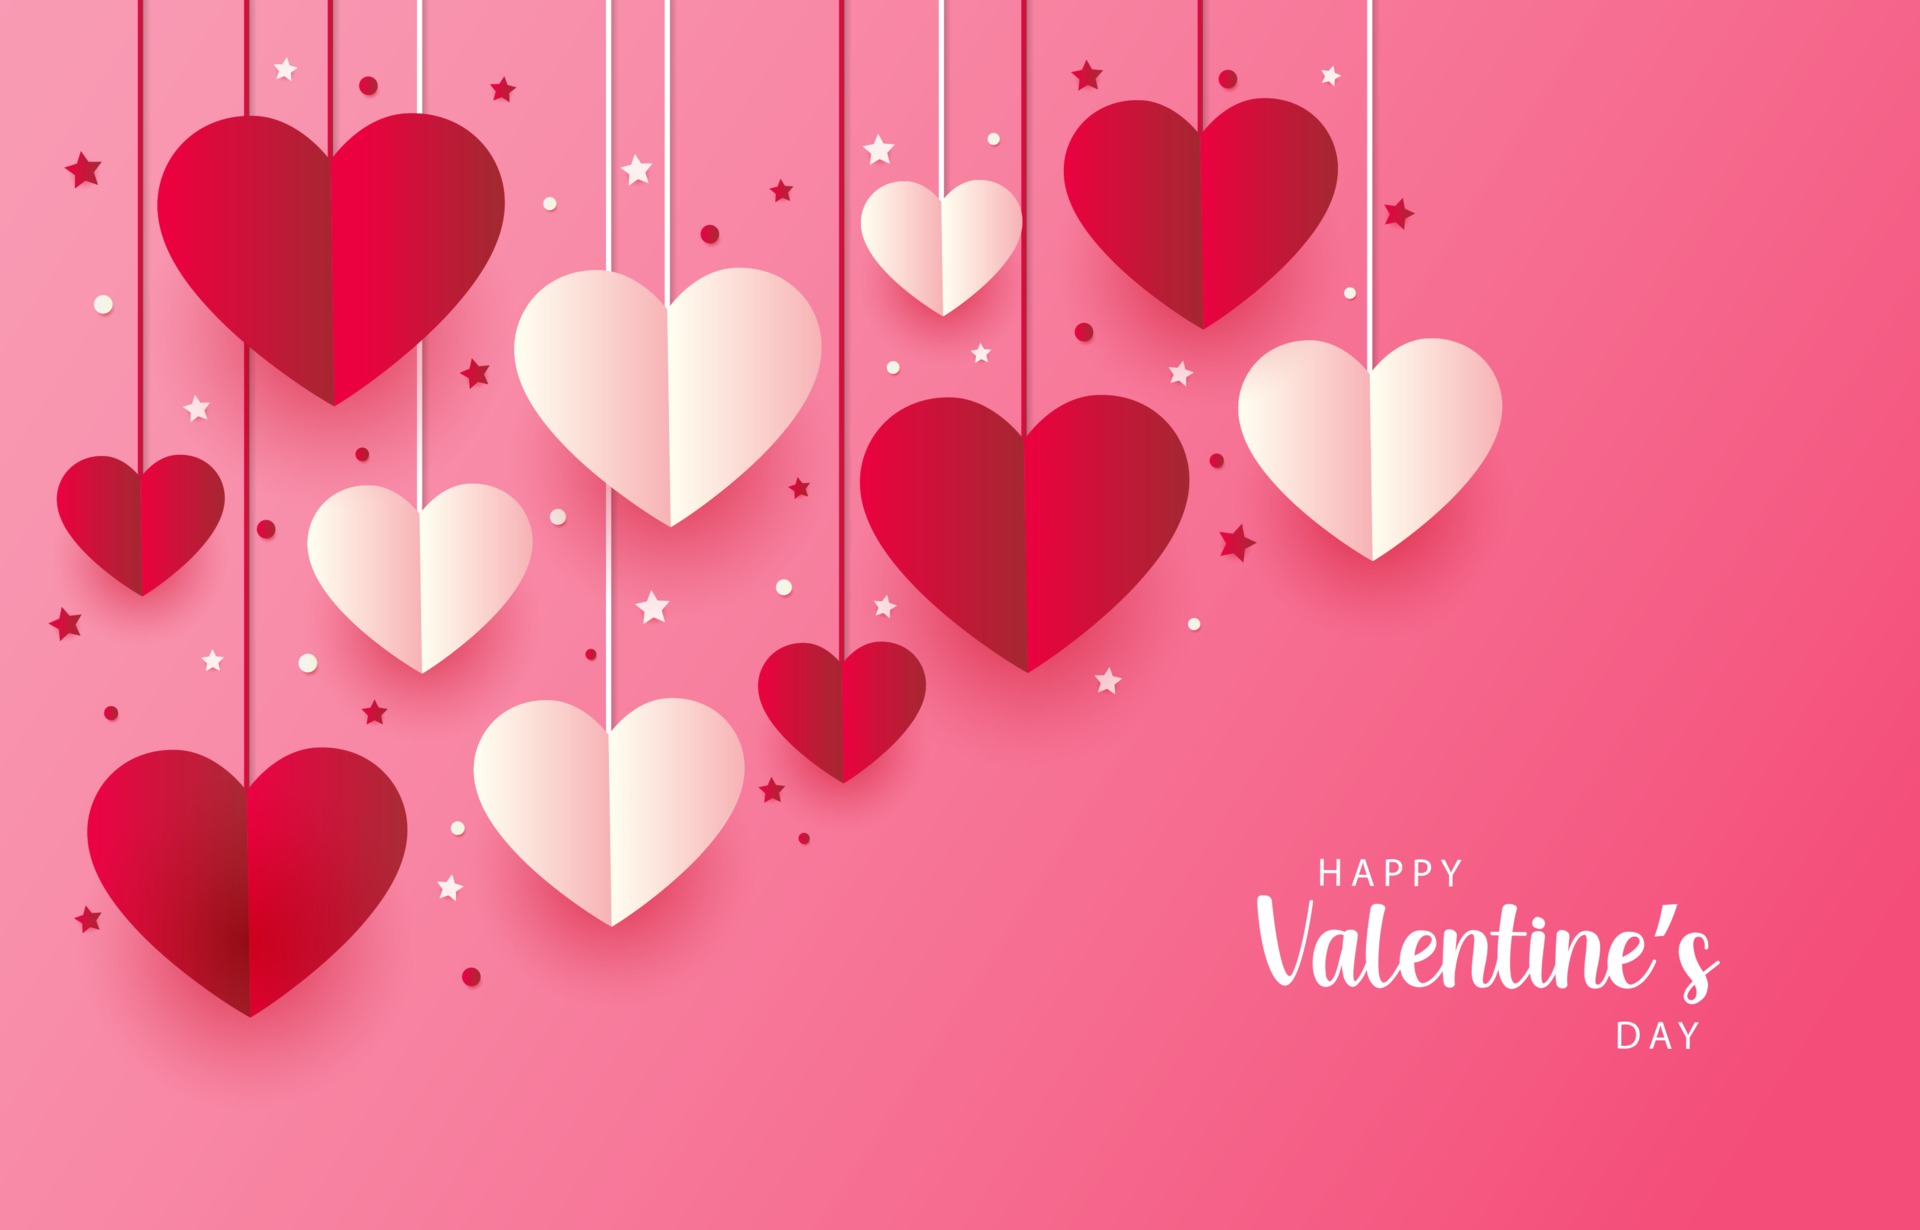 Hãy trang trí Spa của bạn với những hình nền Valentine màu hồng để mang đến cảm giác thư giãn và yên tĩnh cho khách hàng của mình. Những ý tưởng sáng tạo này nhất định sẽ mang đến cho bạn nhiều lợi ích và giá trị.